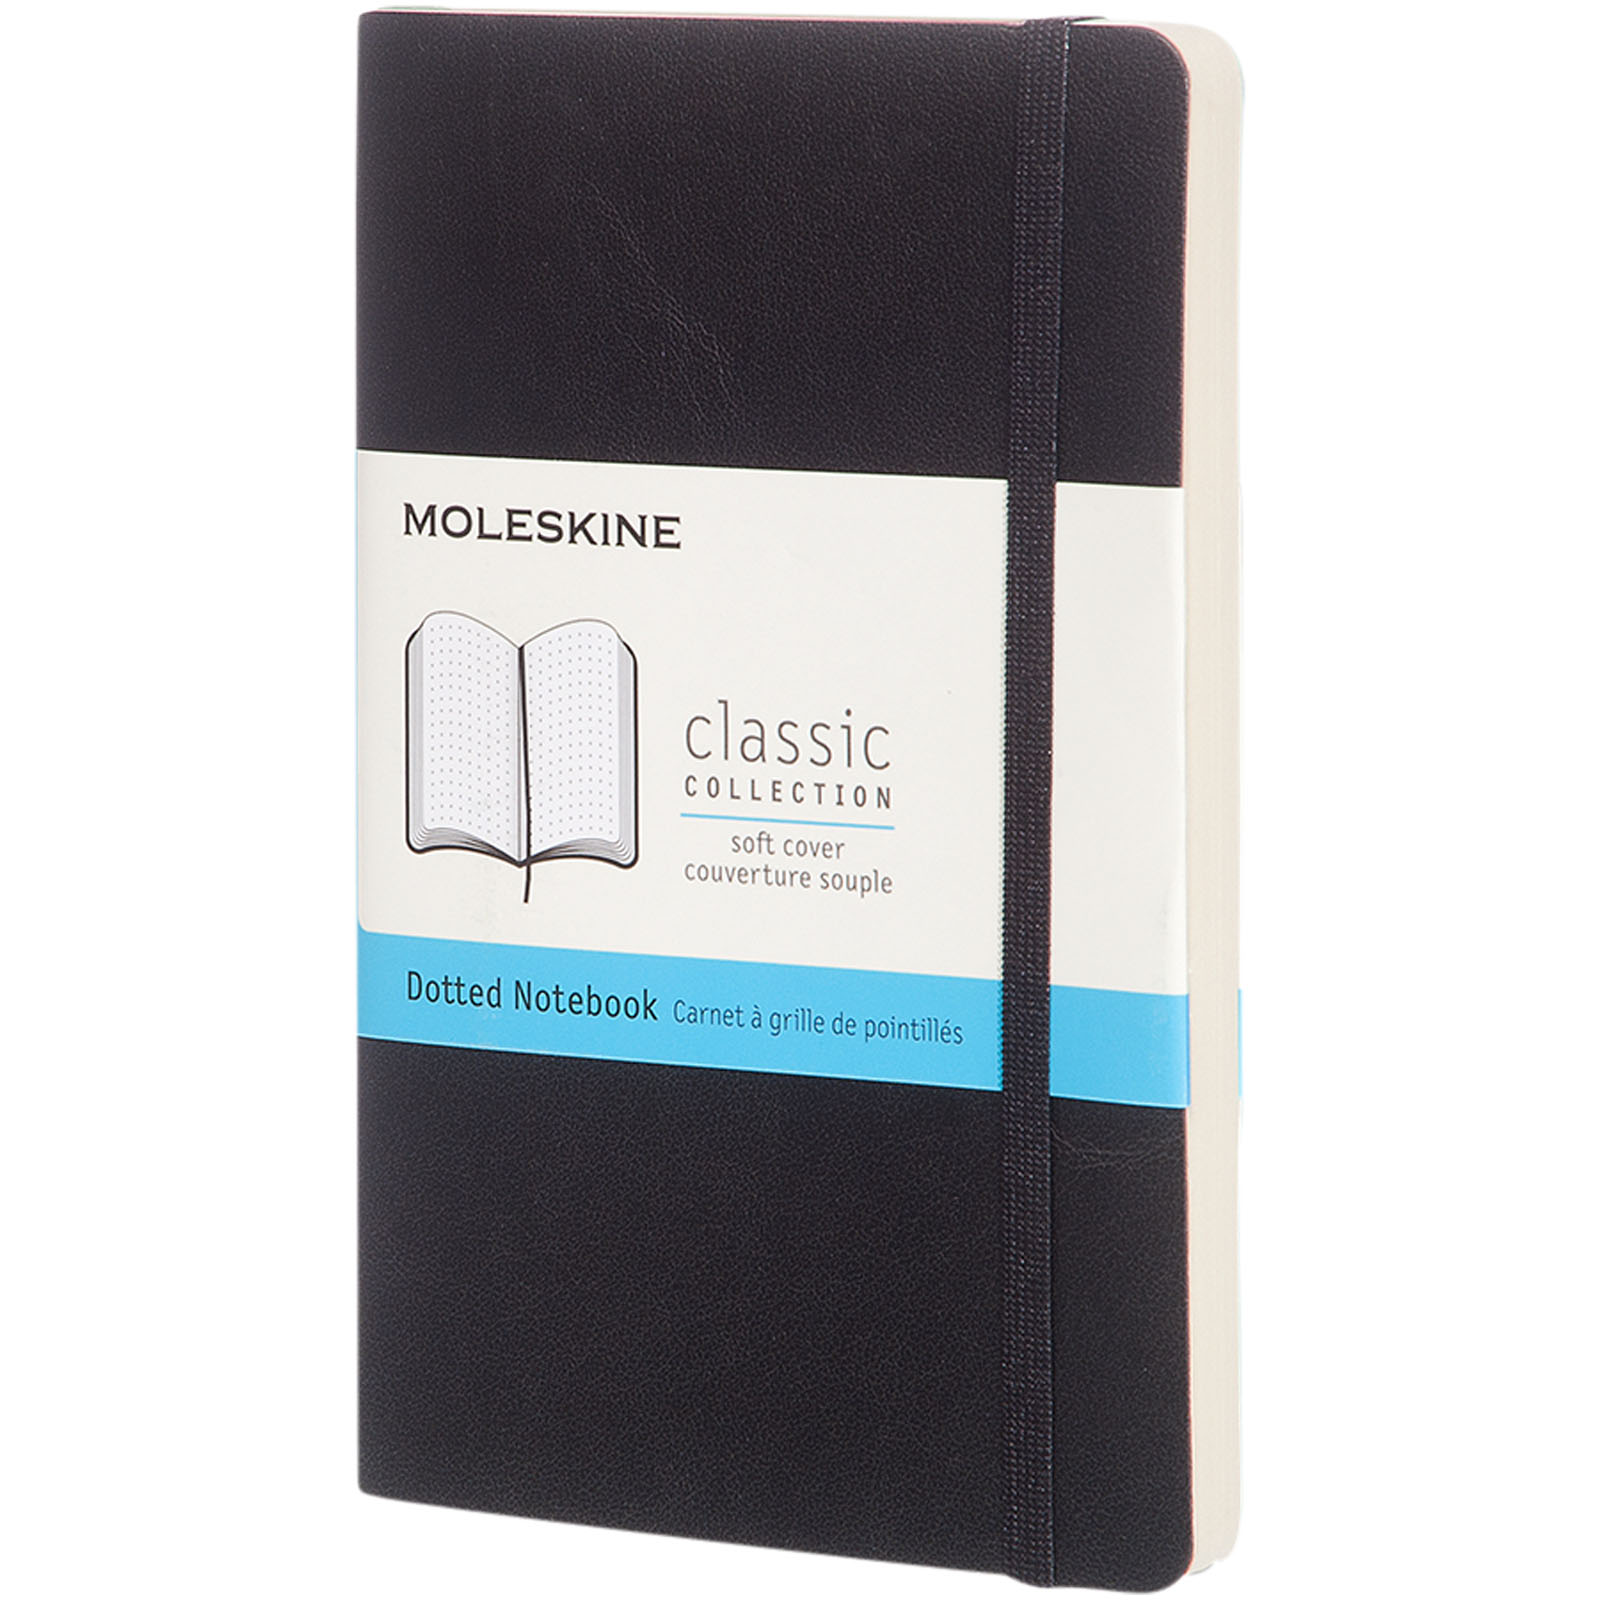 Classic Softcover Notizbuch Tachenformat – gepunktet